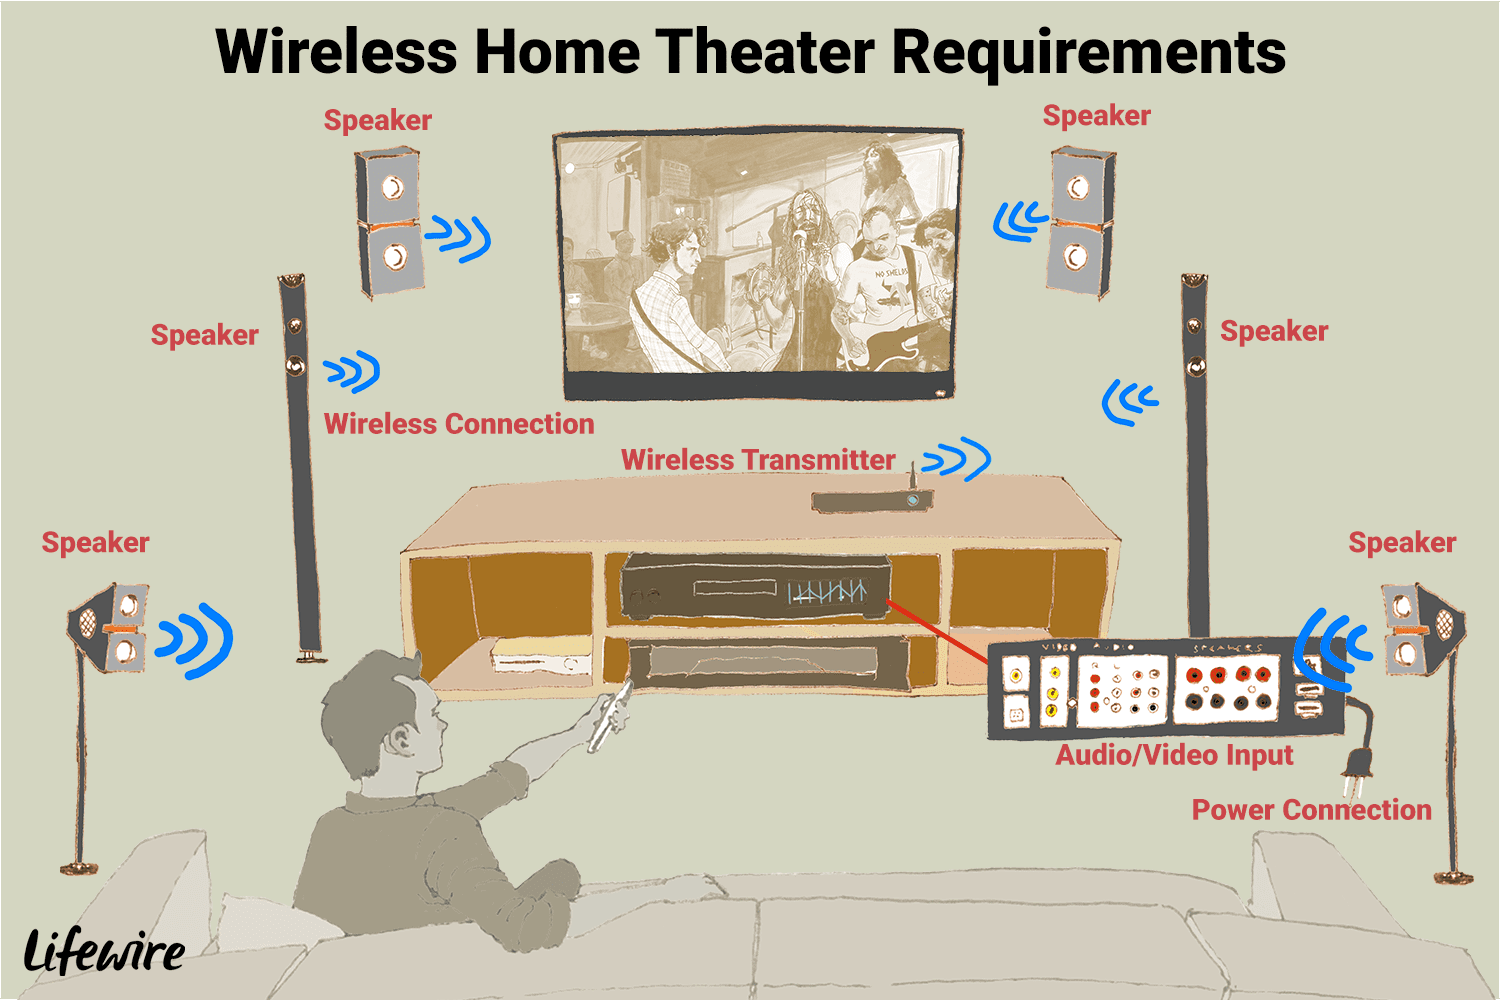 Иллюстрация требований к беспроводной системе домашнего кинотеатра.